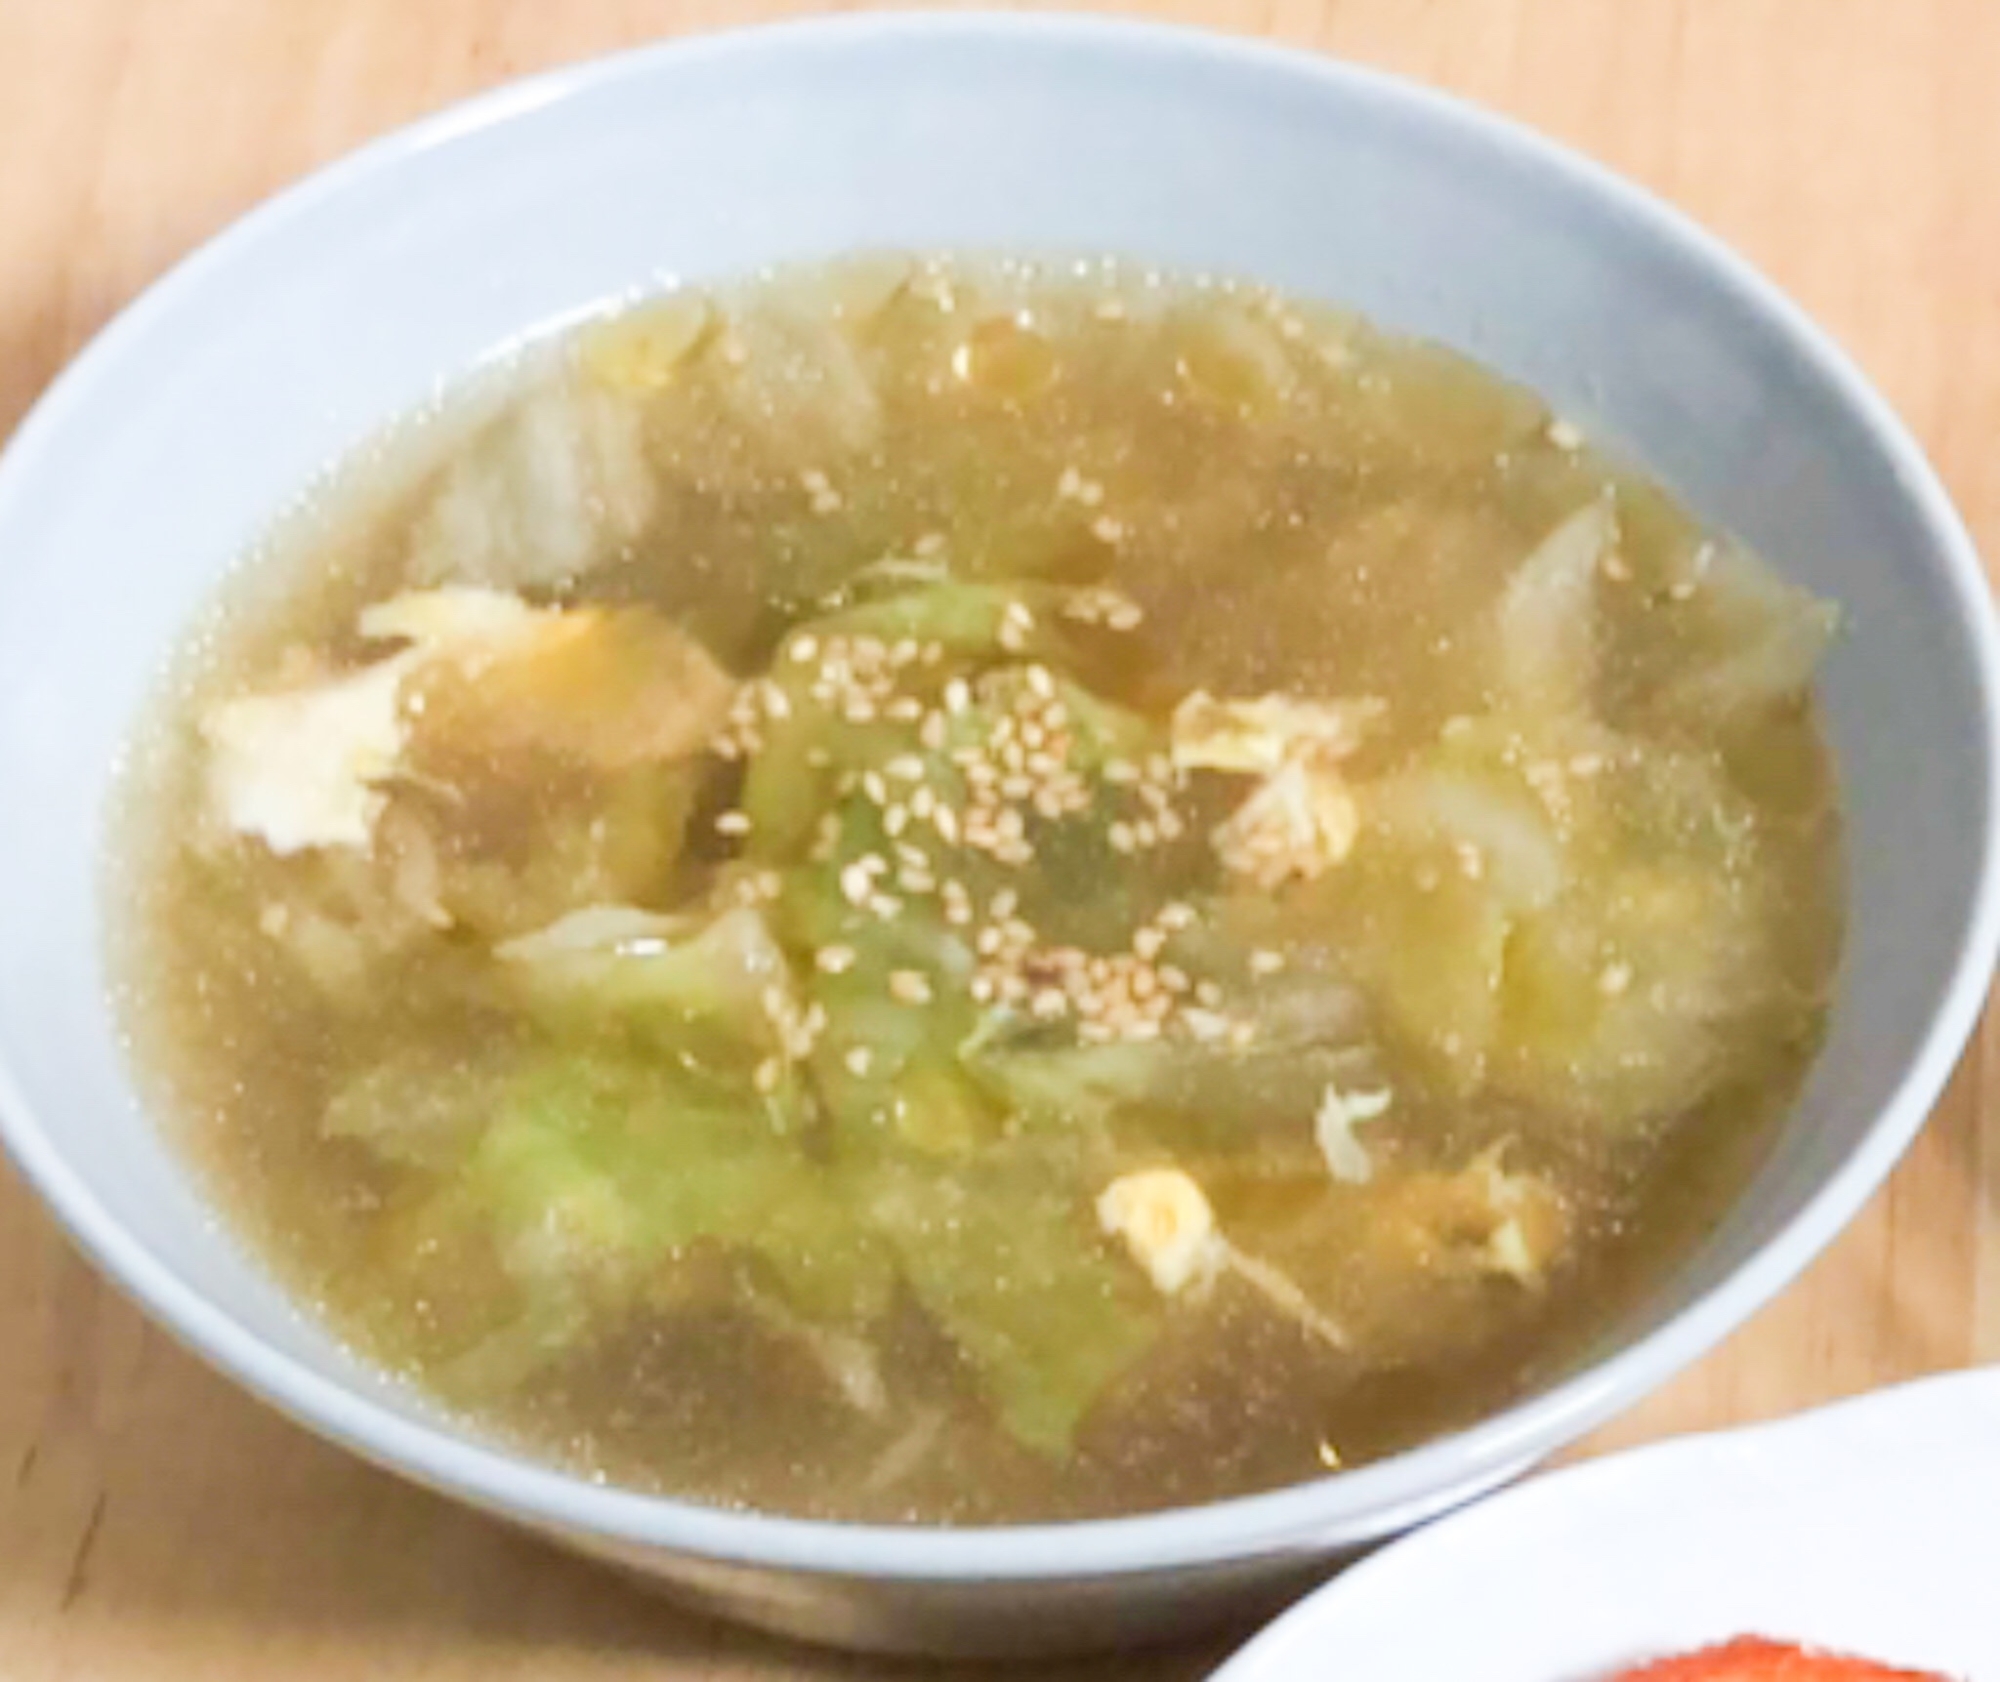 白菜とたまごの中華スープ